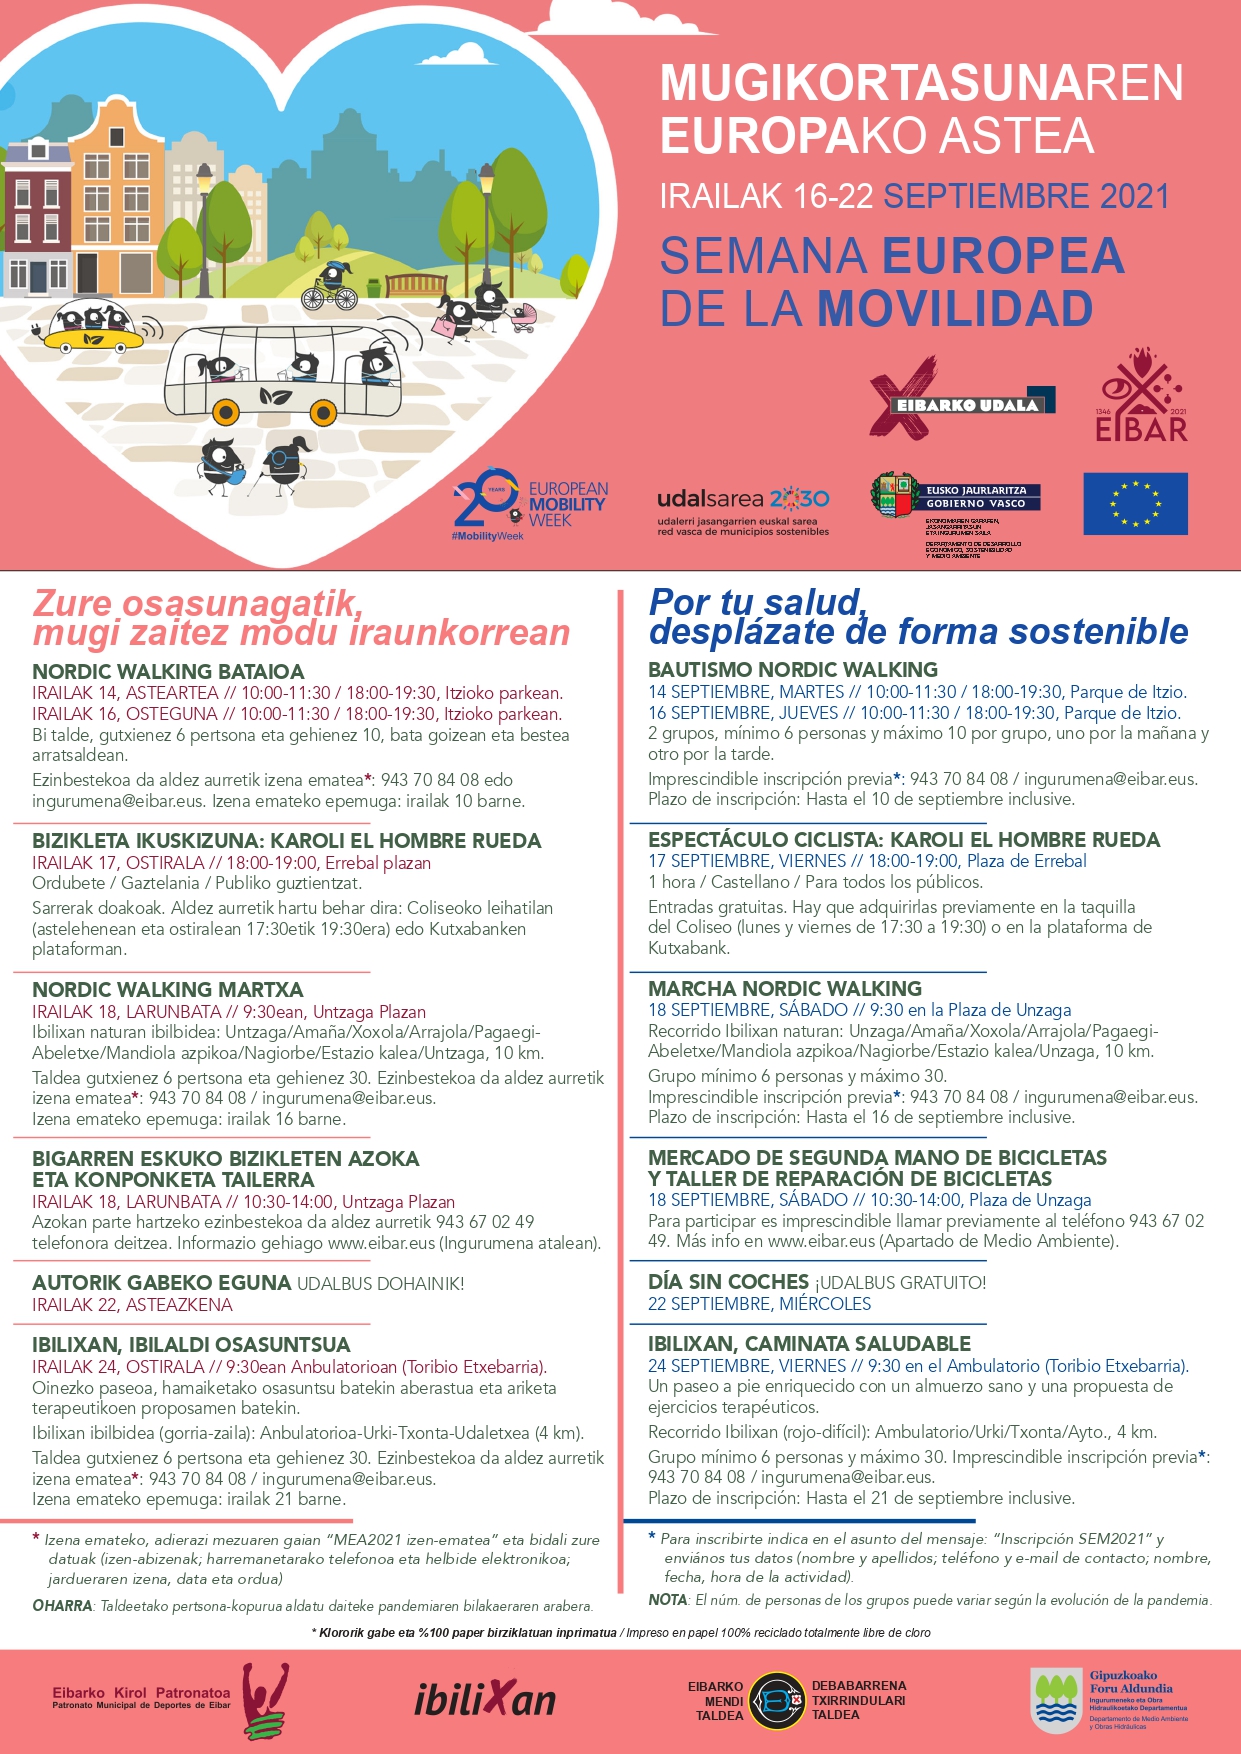 Se abre el plazo para inscribirse en las actividades de la Semana Europea de la Movilidad